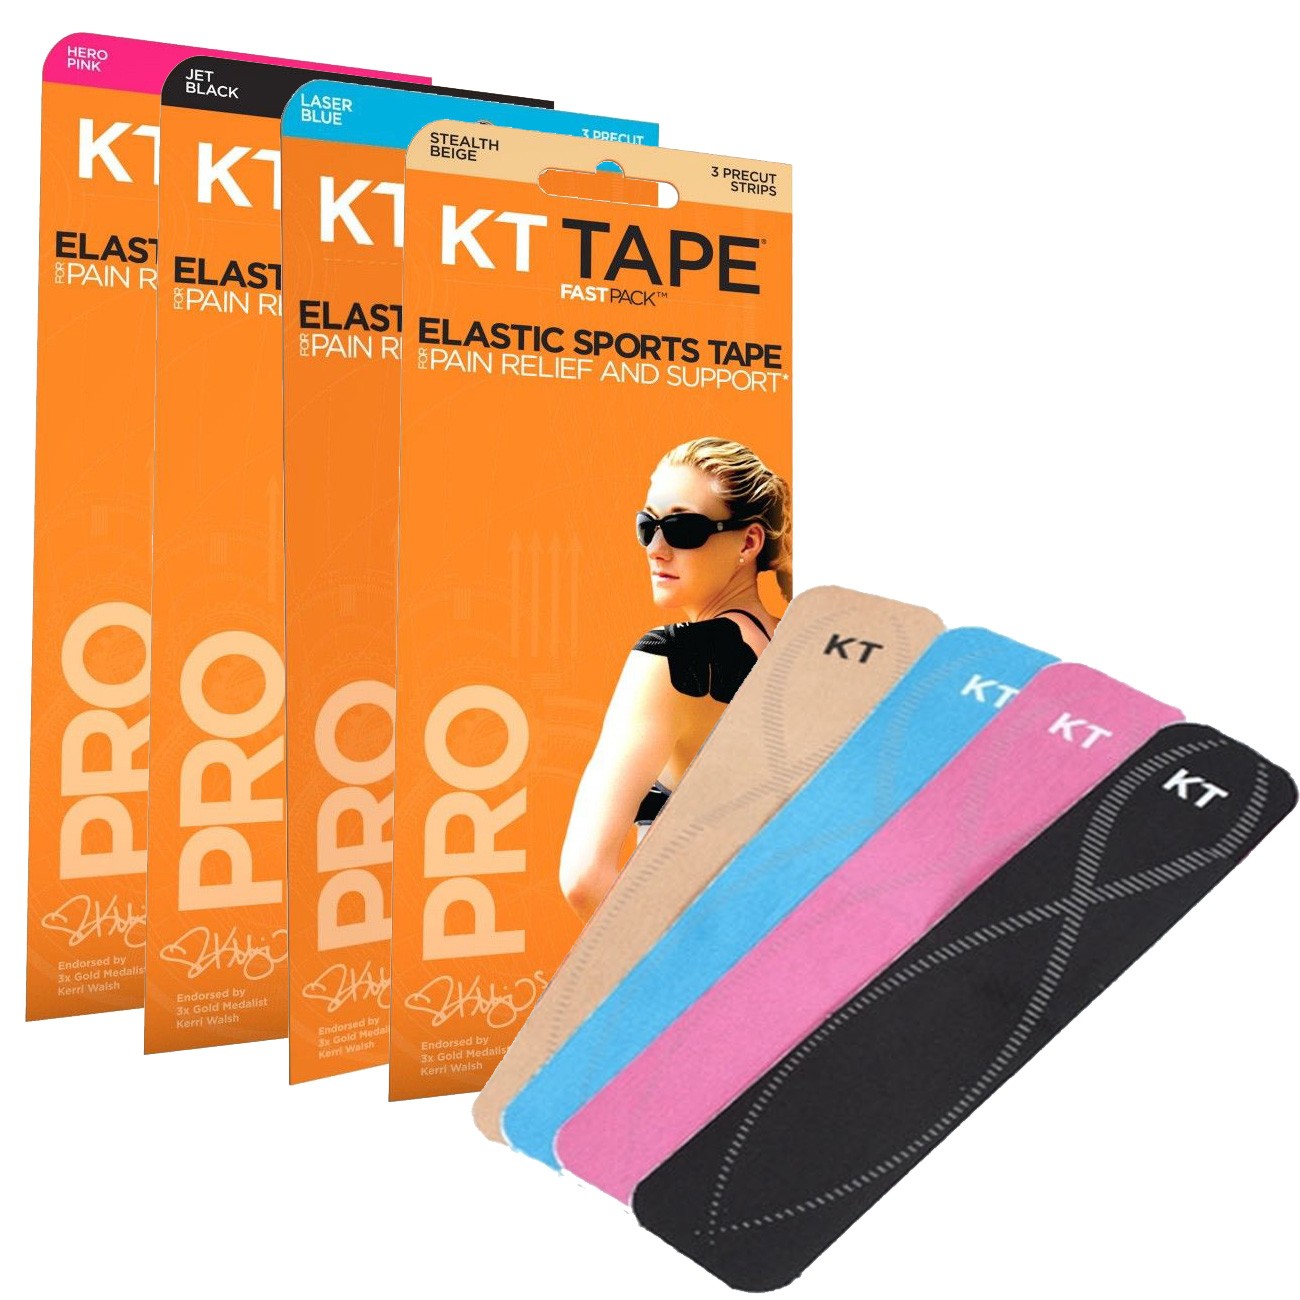 KT Tape Pro kinésiologie ruban élastique sport-Support-héros rose